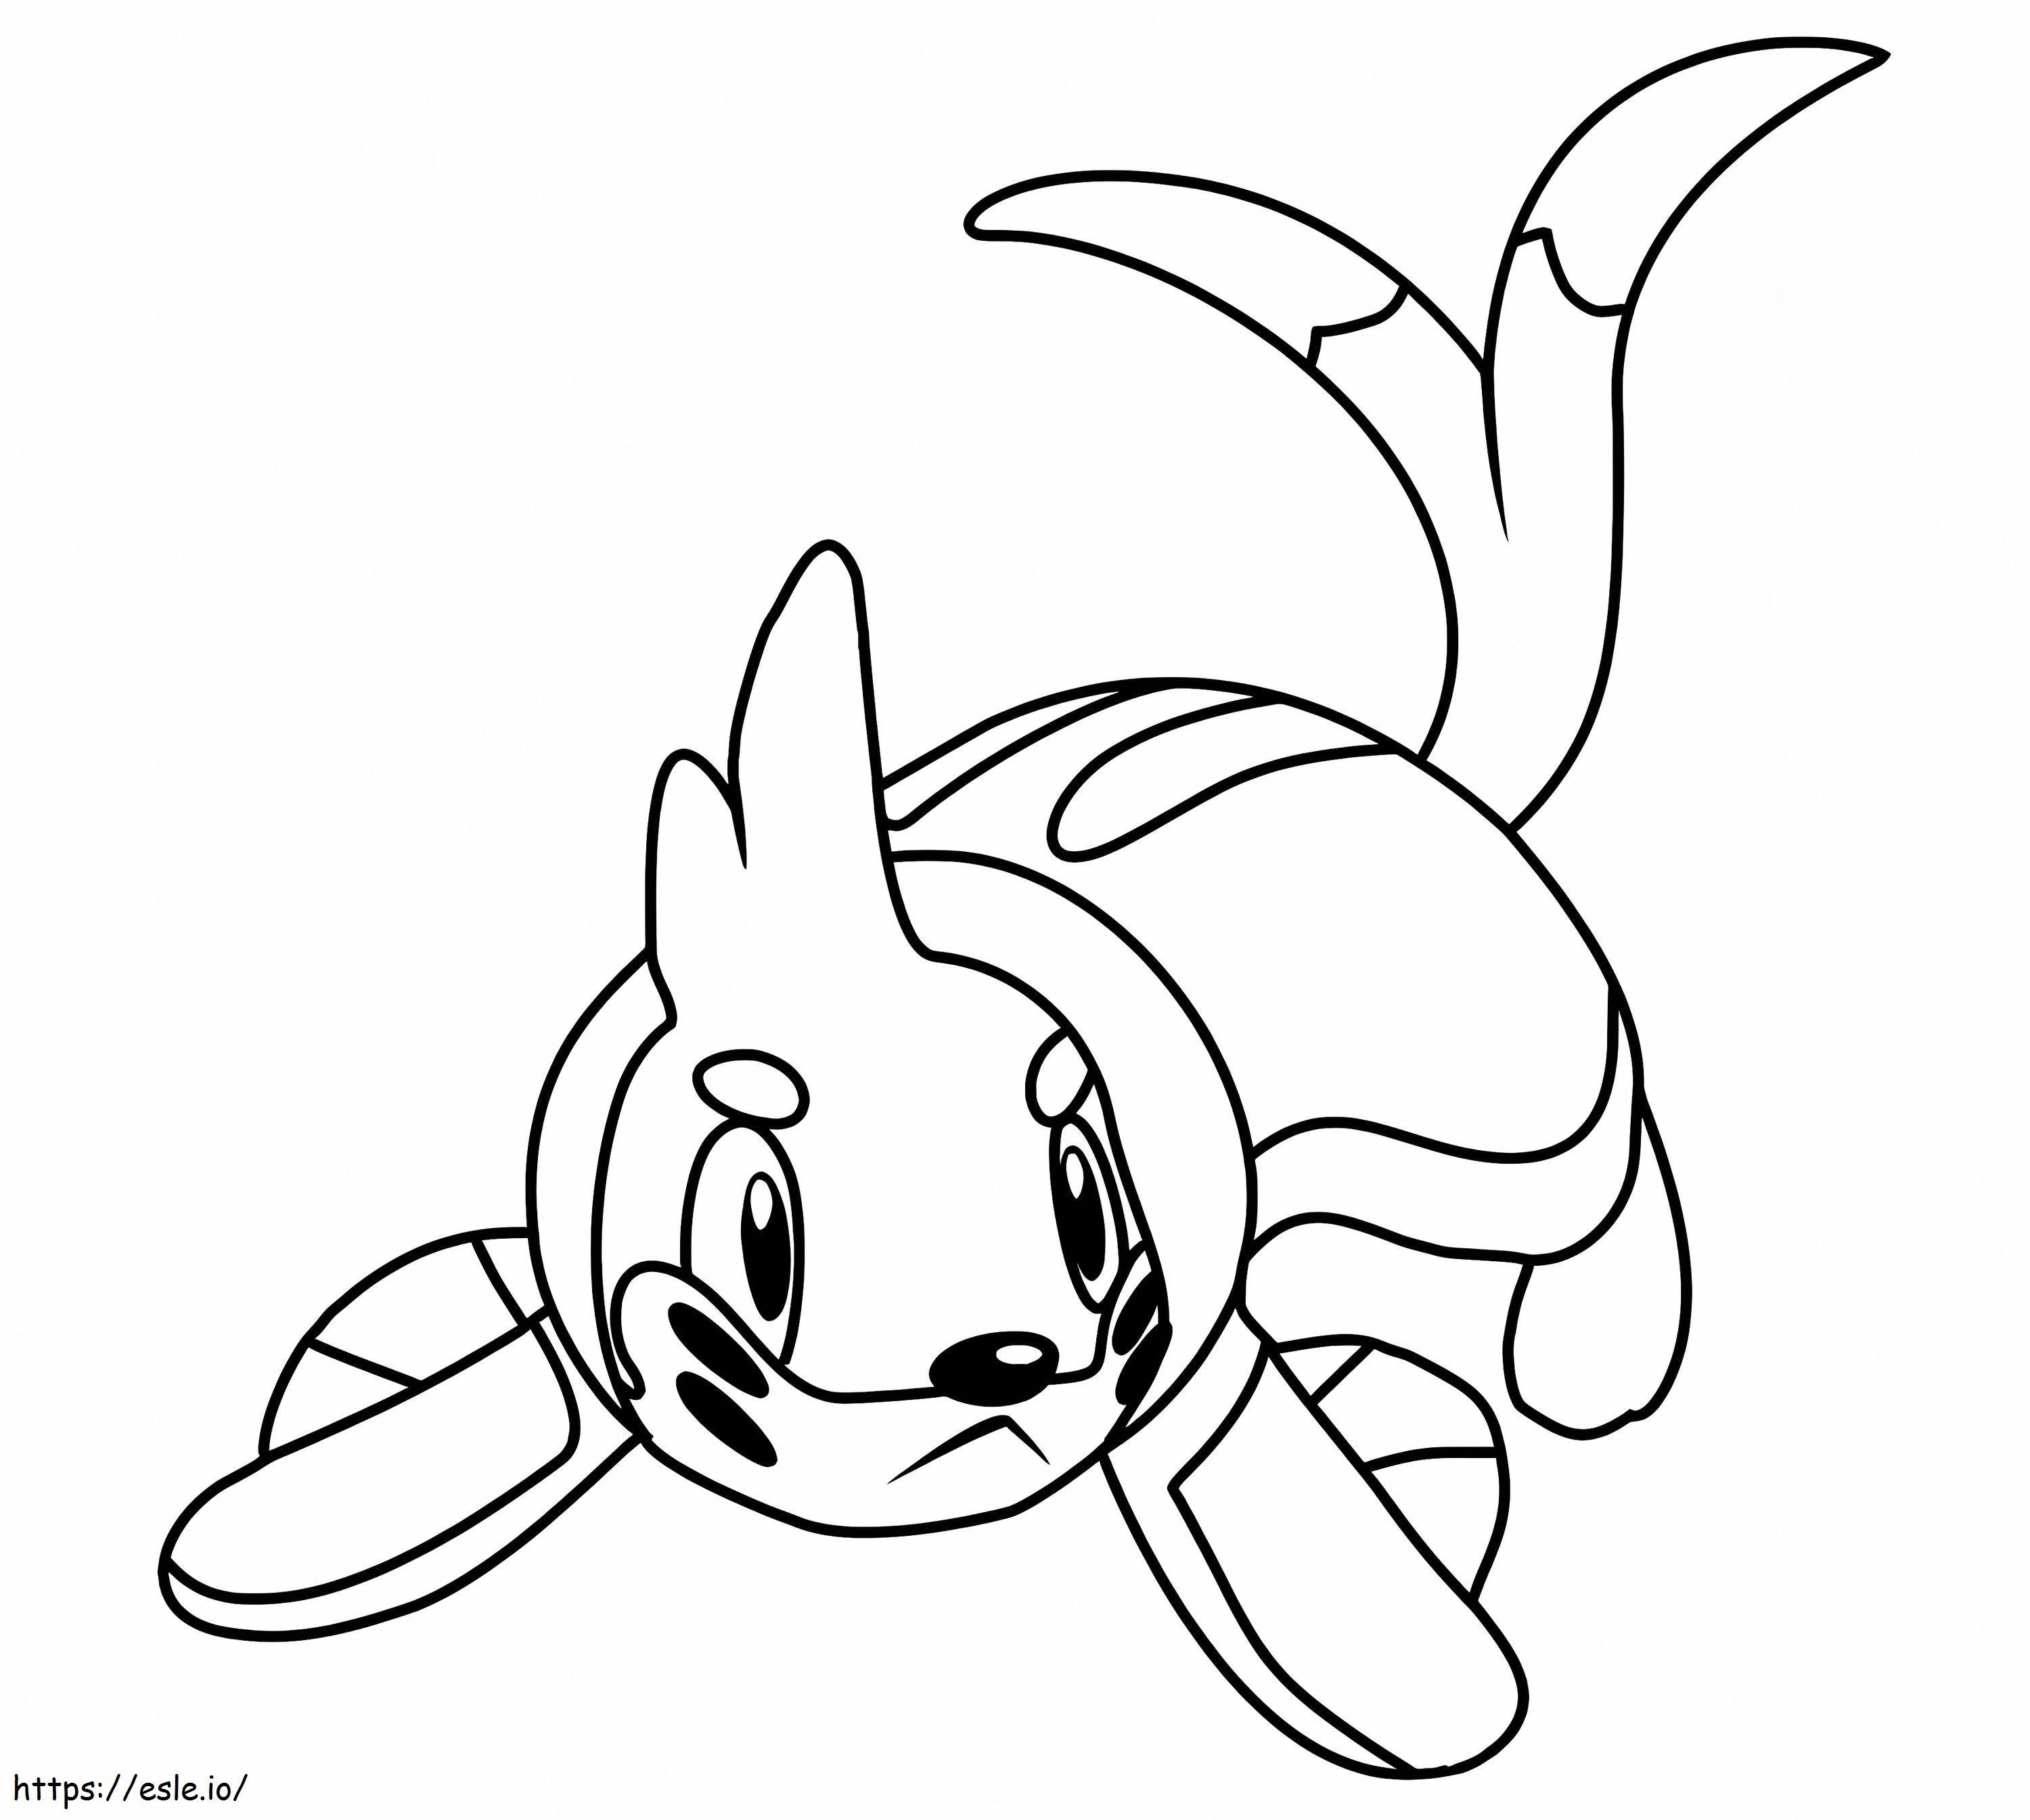 Buizel-Pokémon ausmalbilder